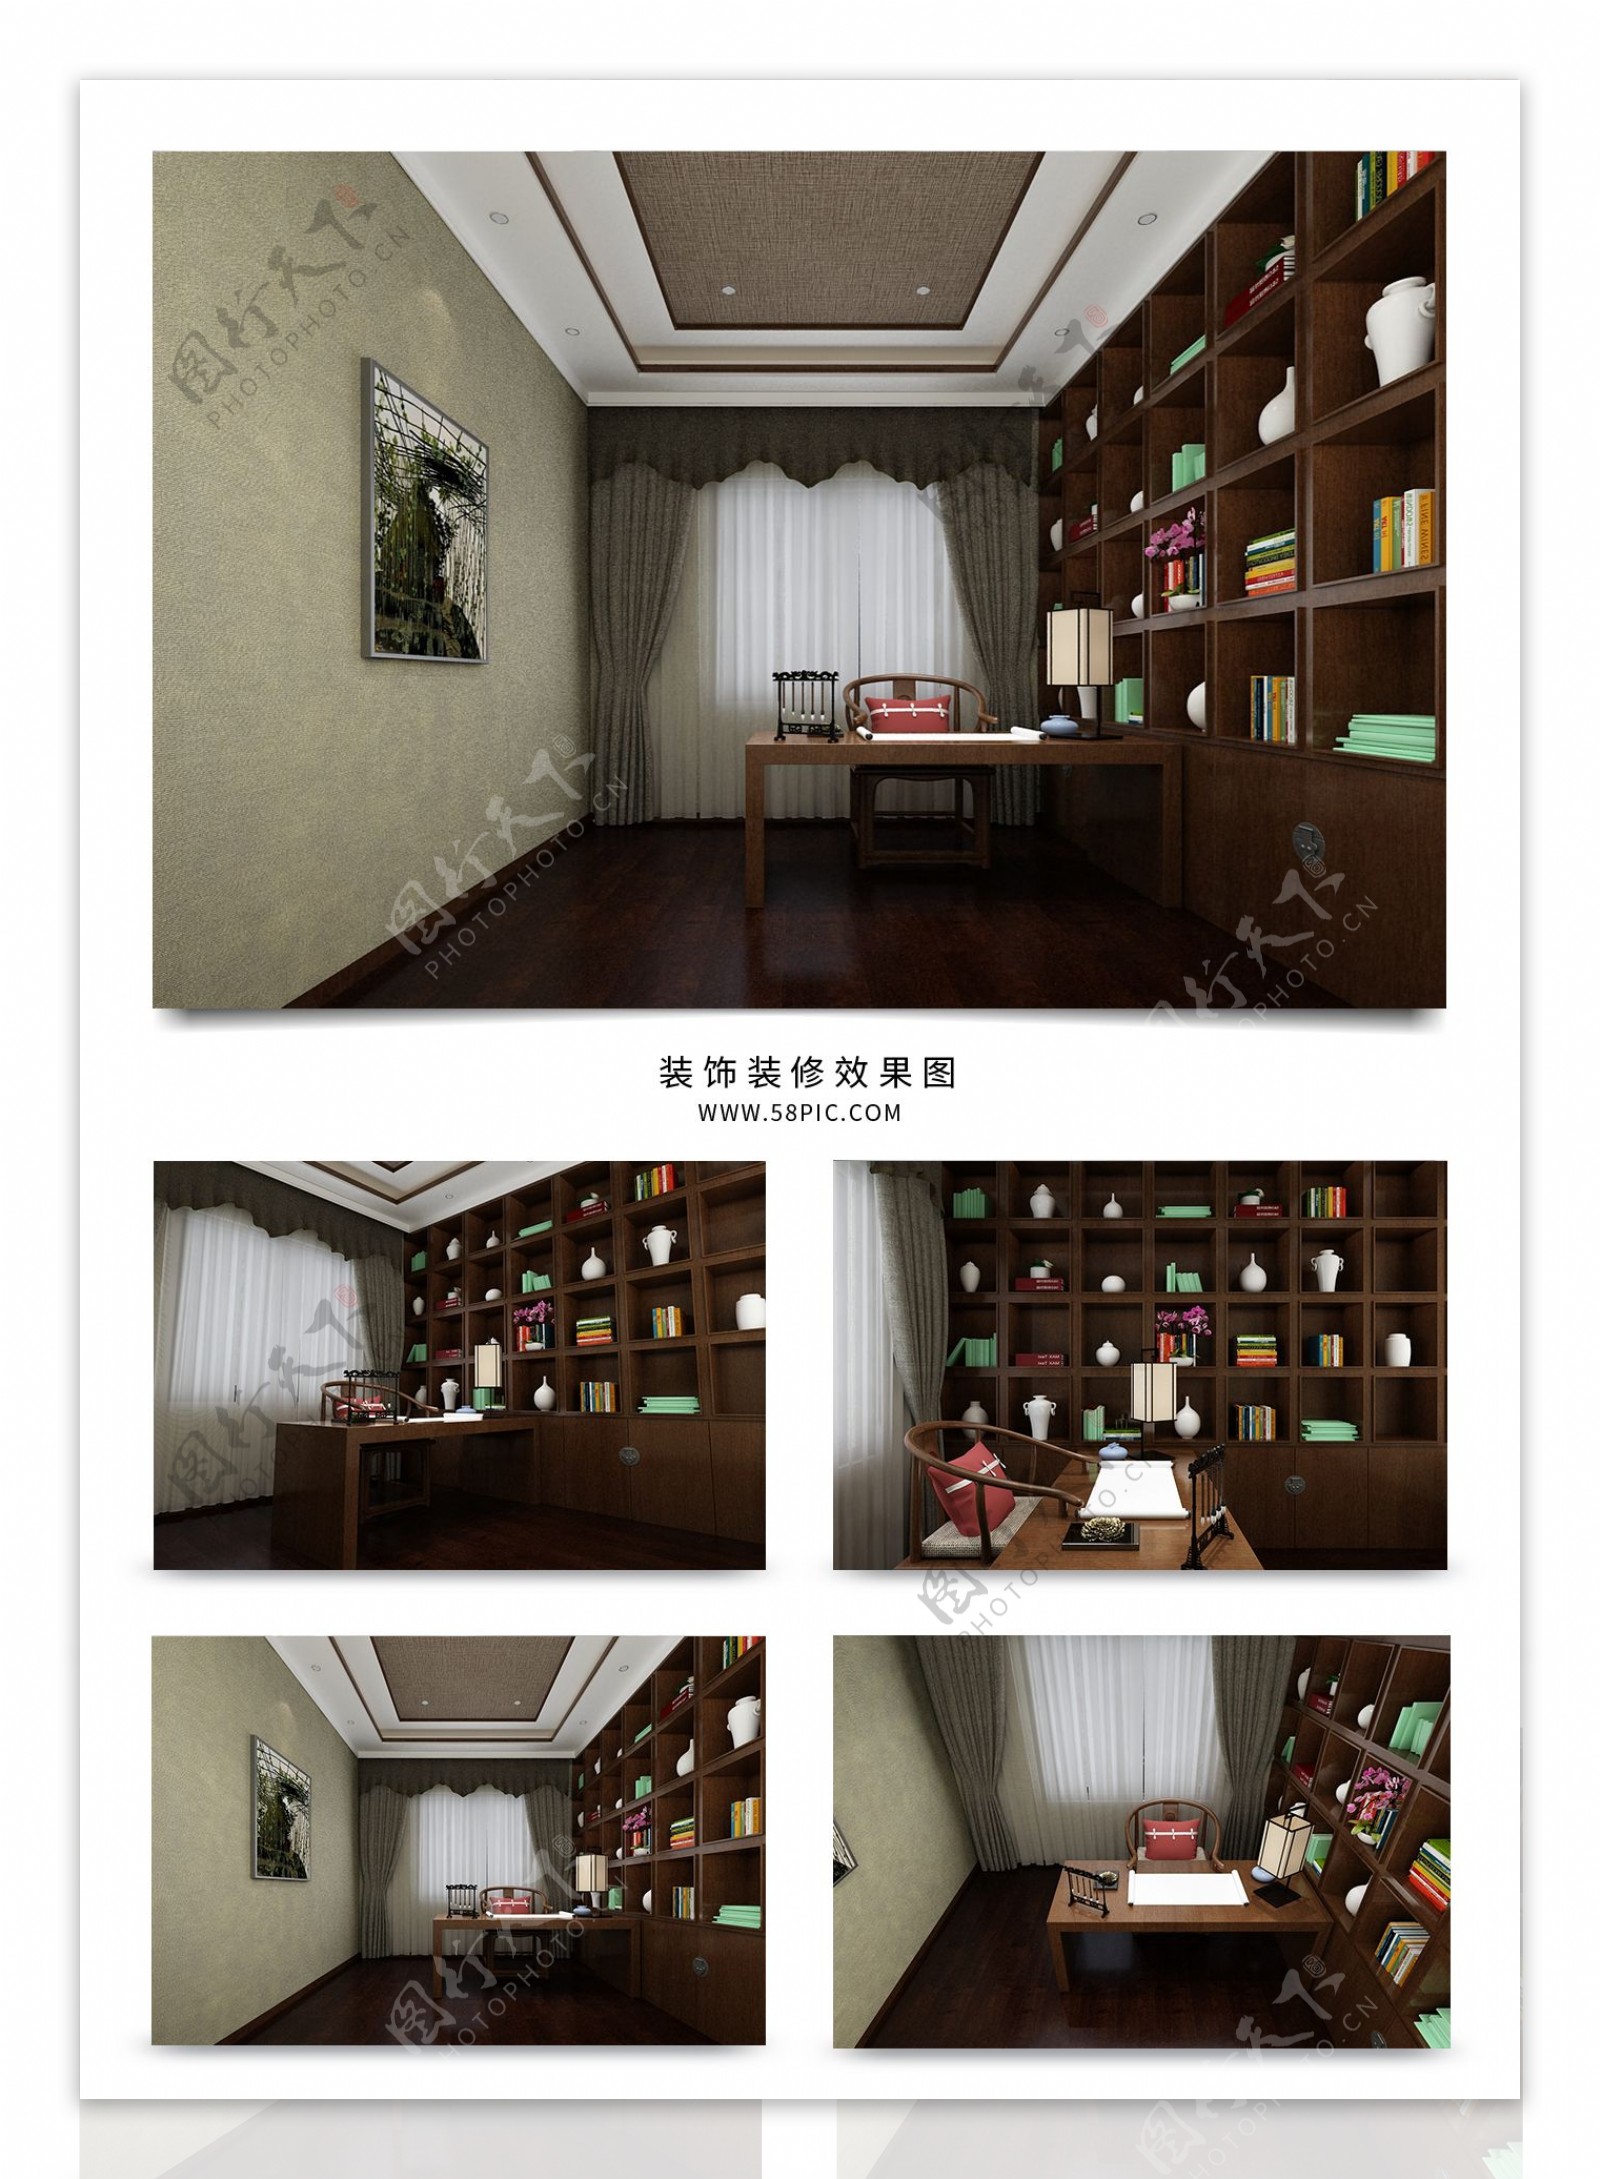 古典中式家庭书房空间效果图赏析